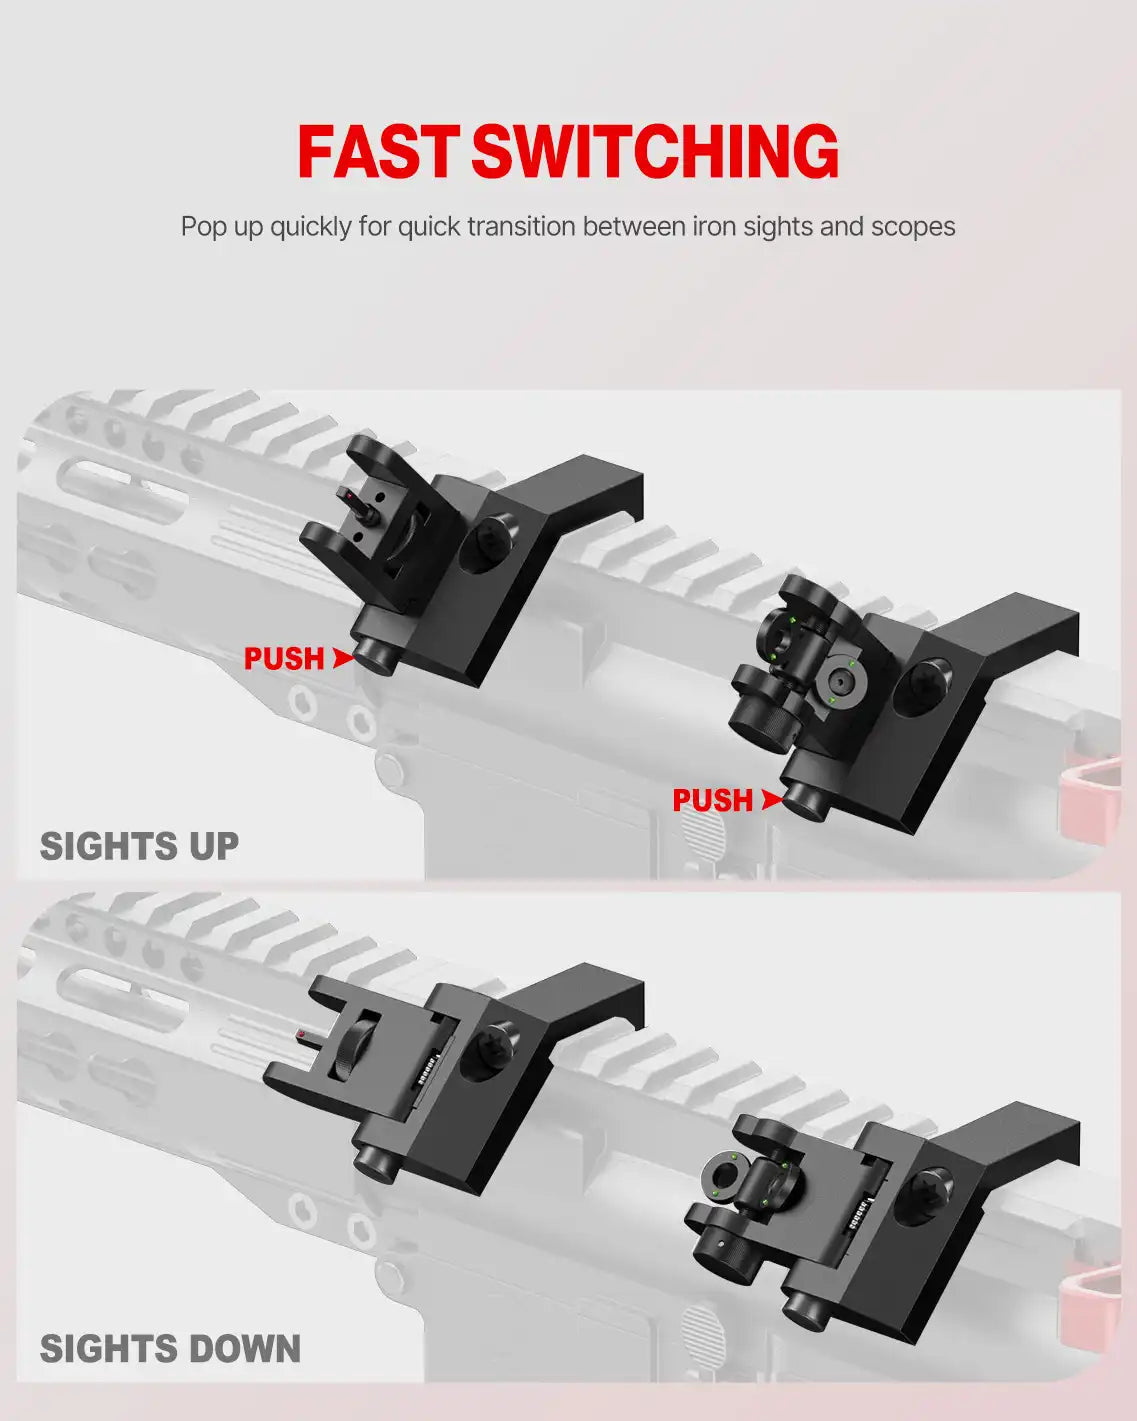 Feyachi S54 Offset Iron Sights - Backup di transizione rapida